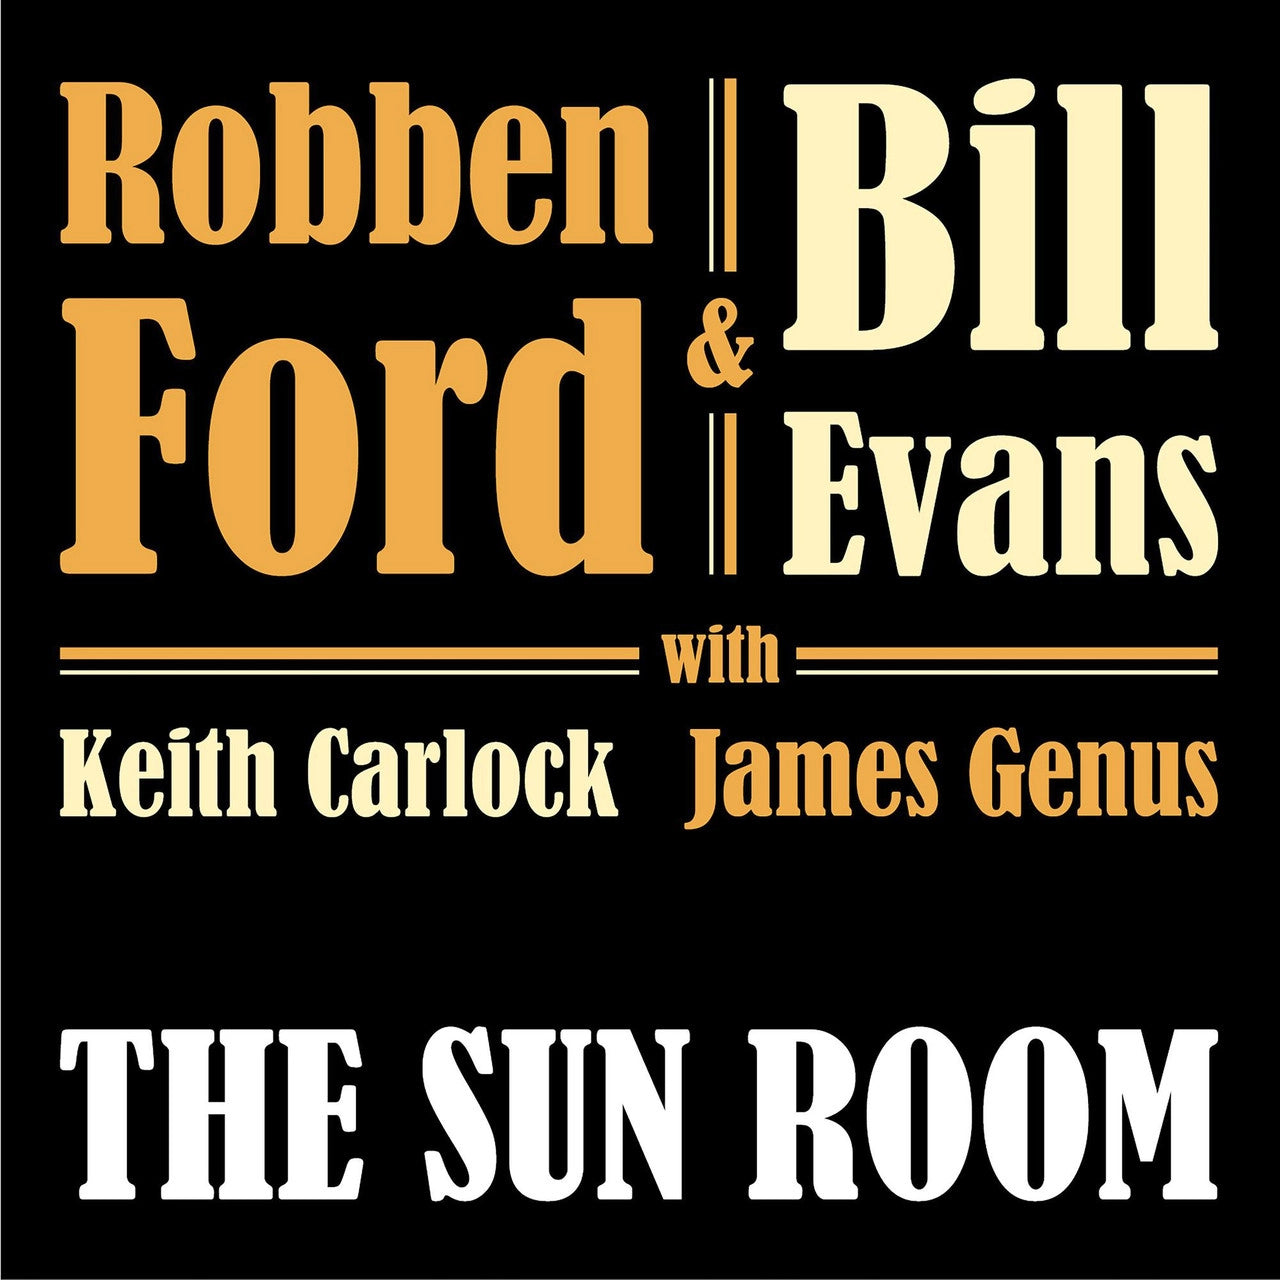 Robben Ford & Bill Evans - The Sun Room (Vinyl LP)